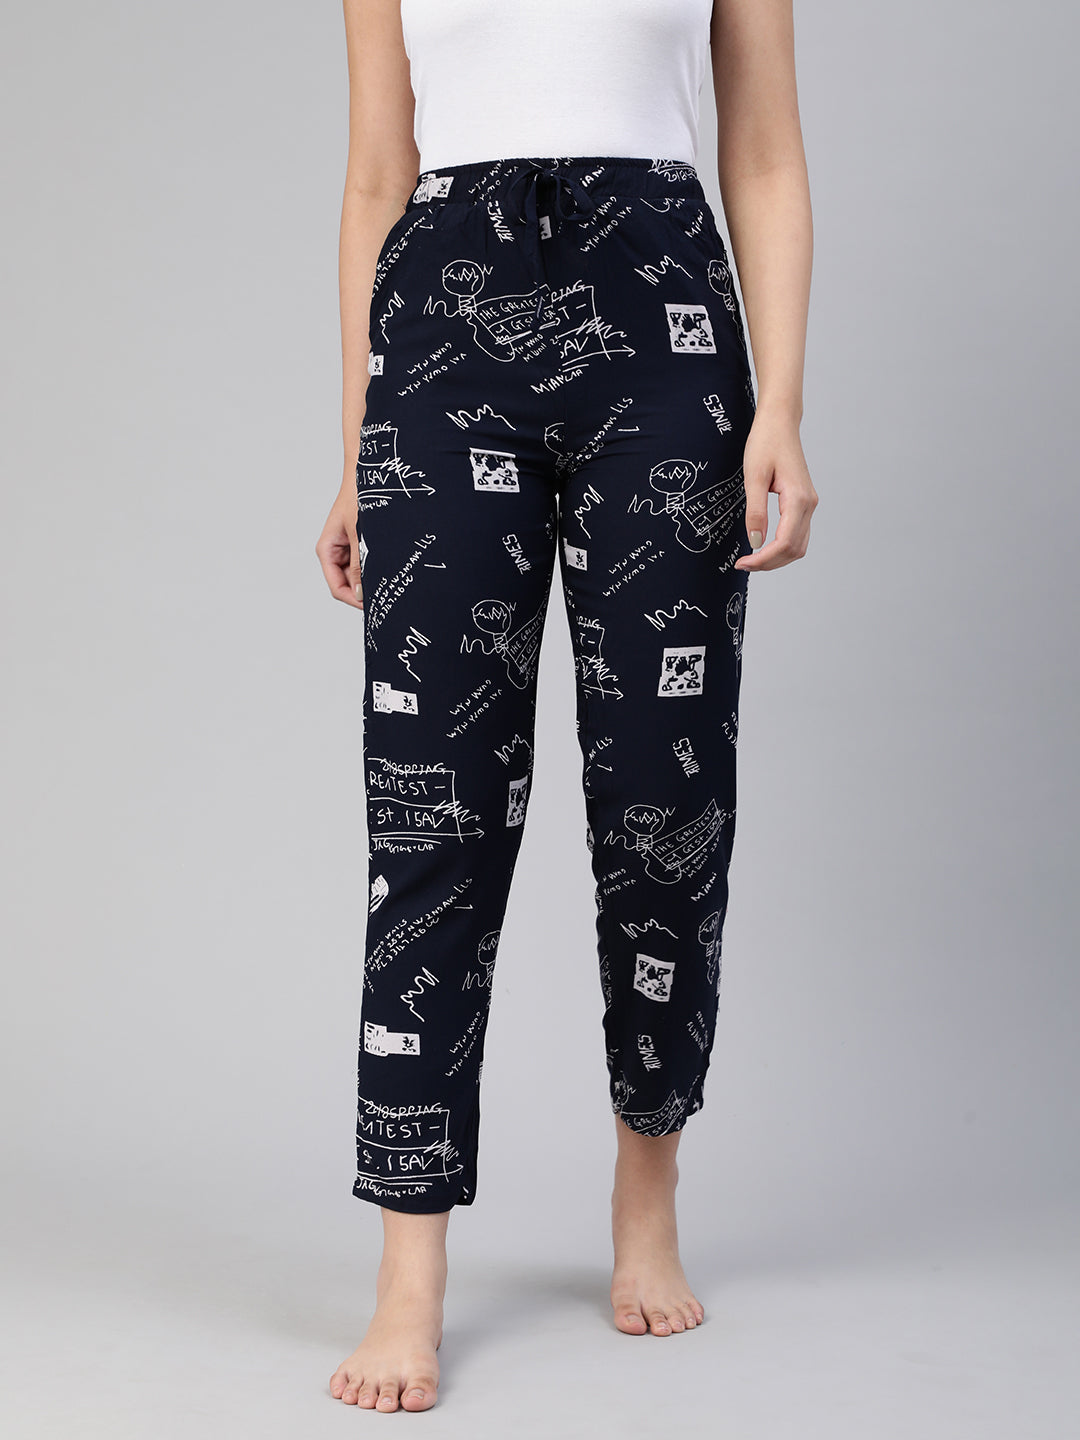 Black Printed Rayon Pyjama #608